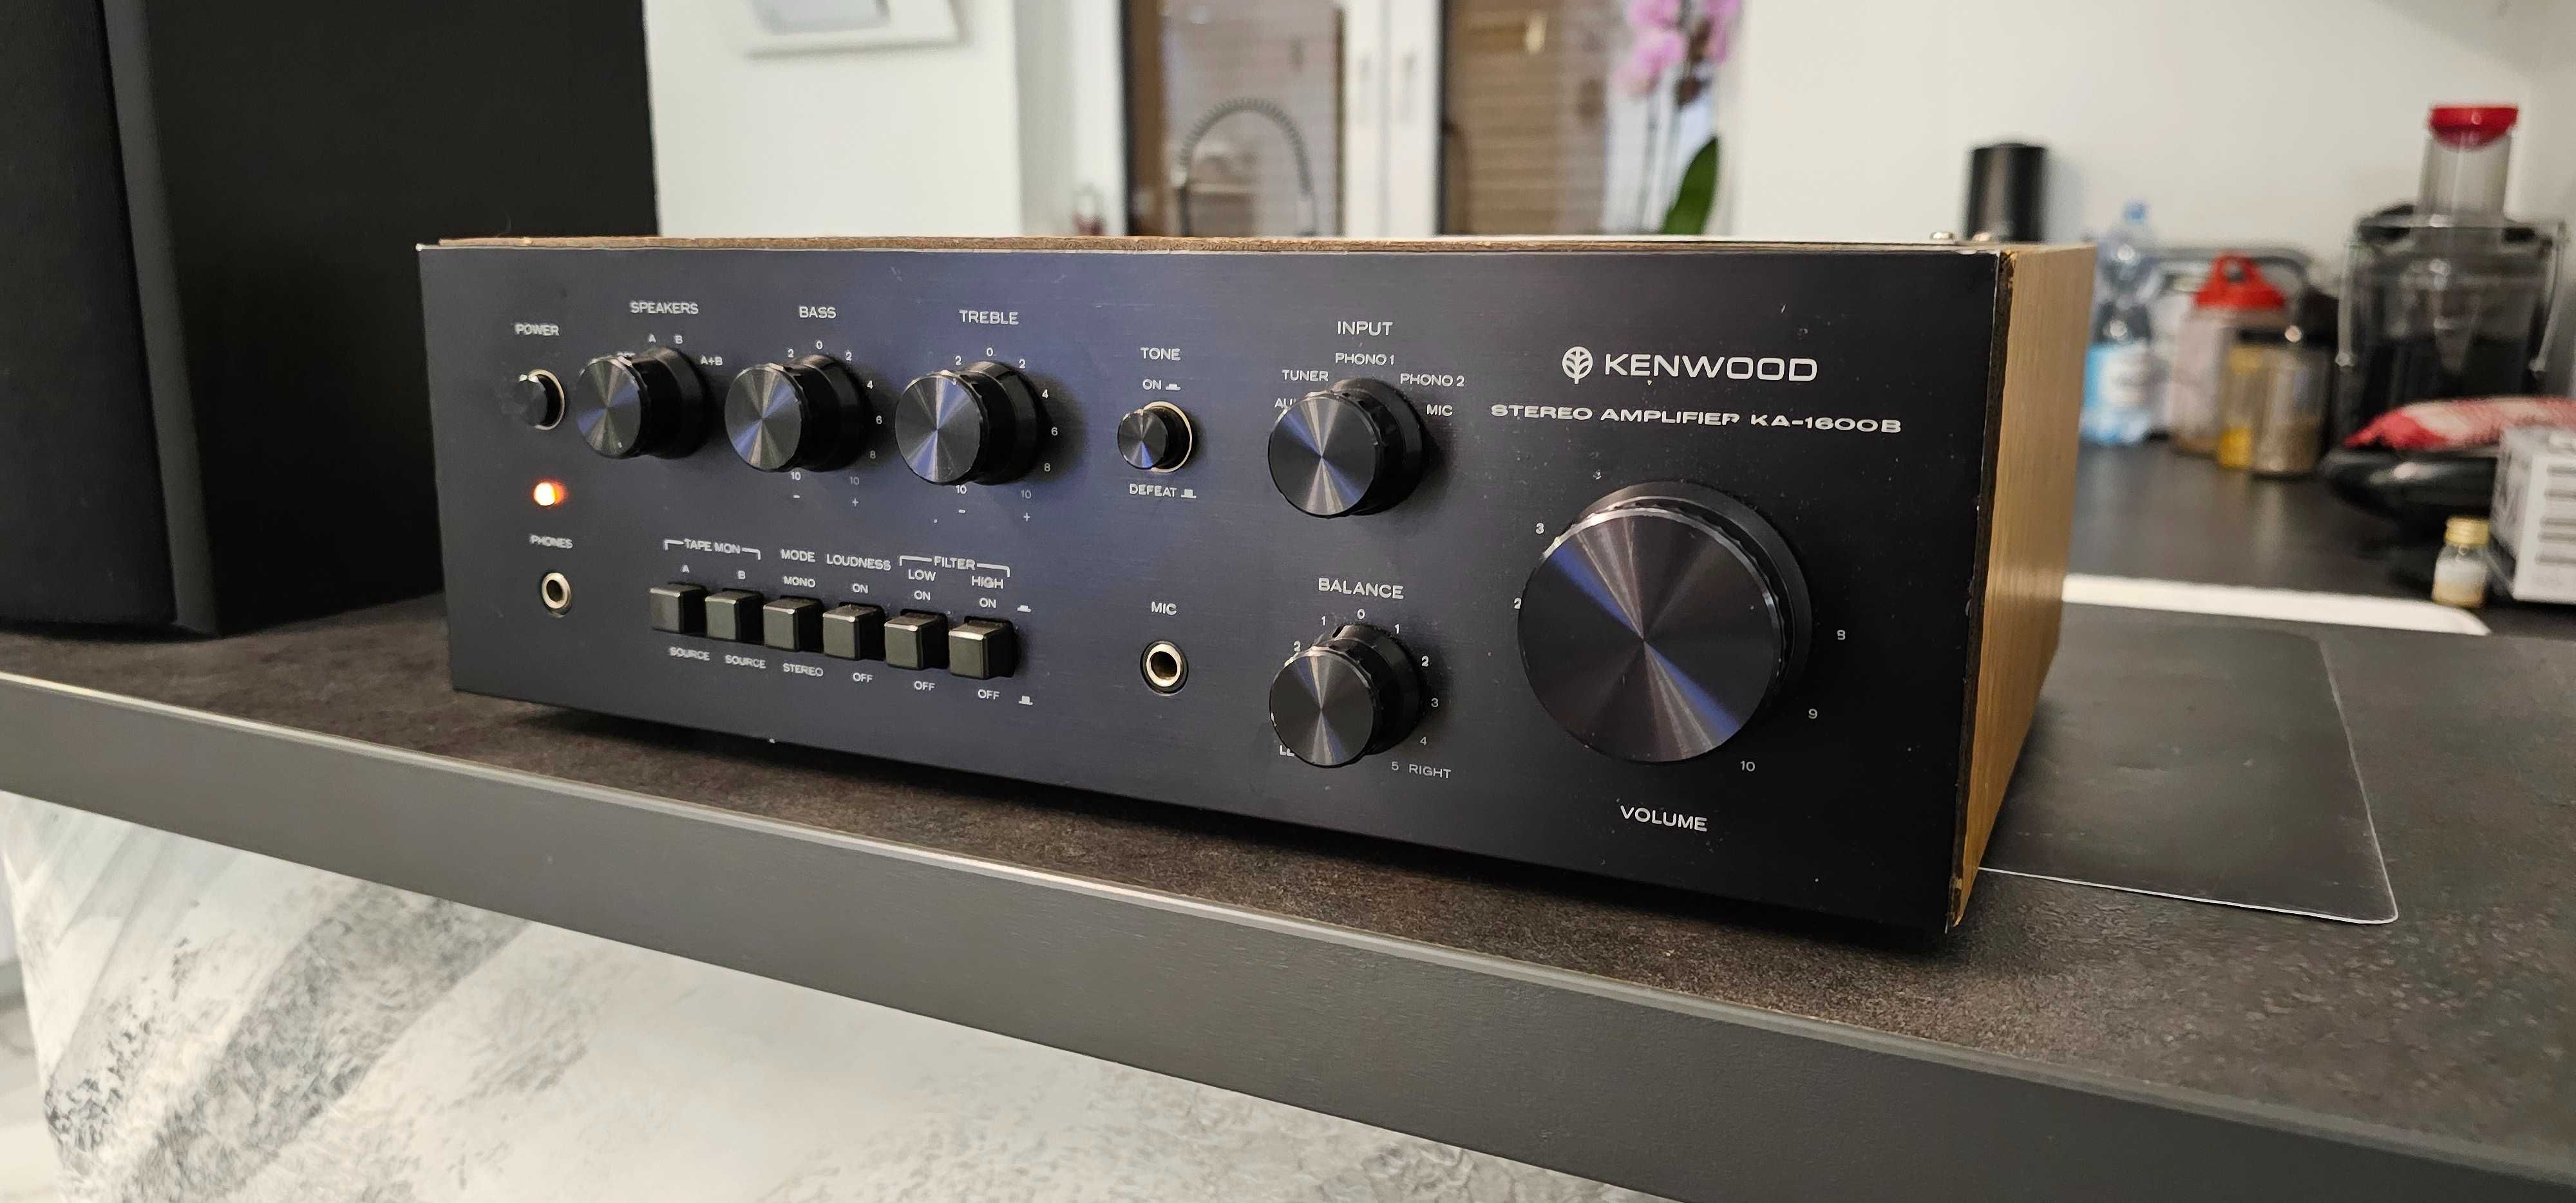 Kenwood KA-1600B wzmacniacz stereo Made in Japan w bardzo ładnym stani